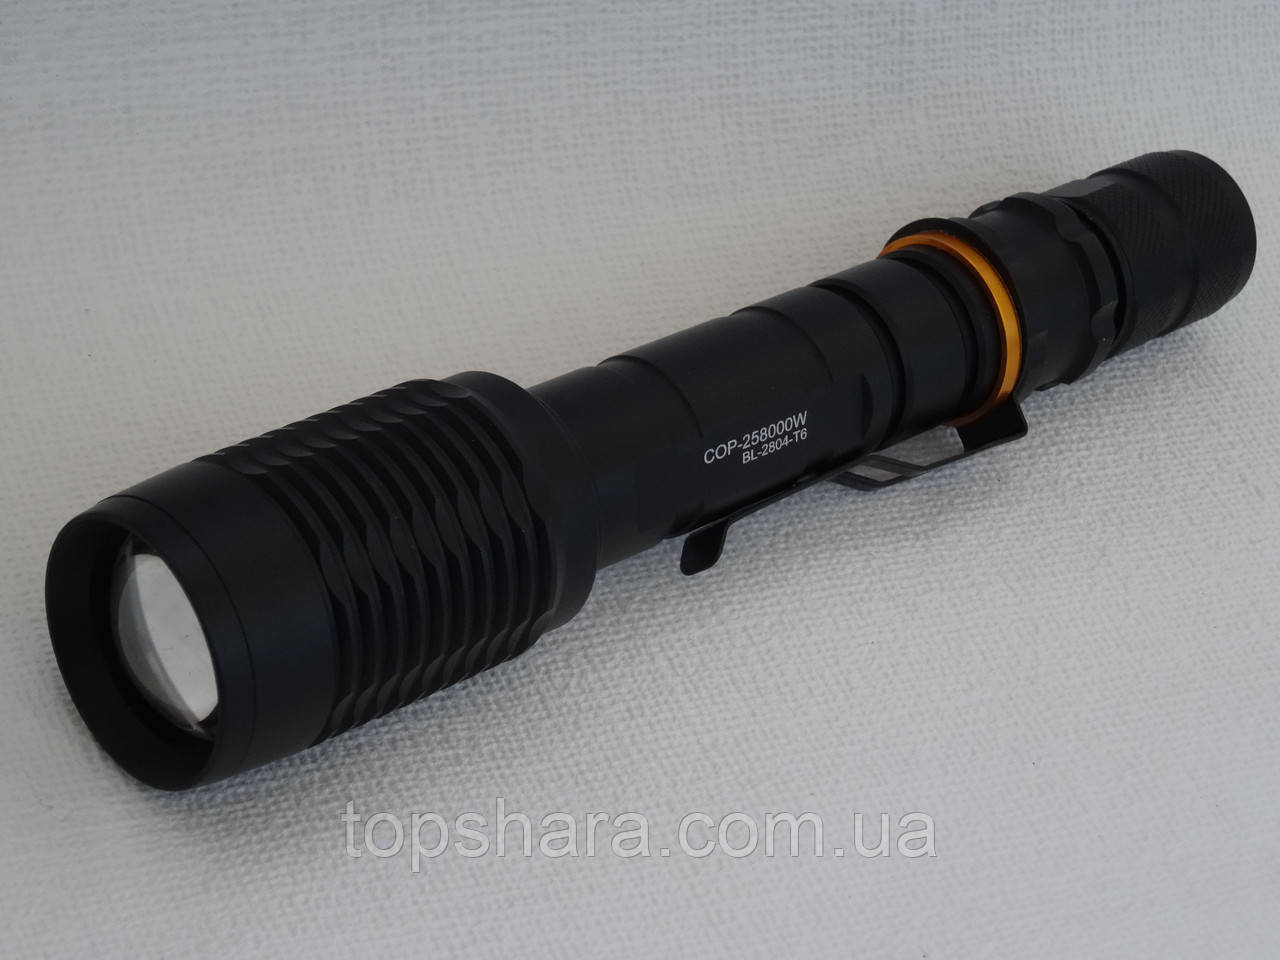 Ліхтарик тактичний ручний світлодіодний Police BL-2804 Т-6, COP-258000W, Zoom, Black